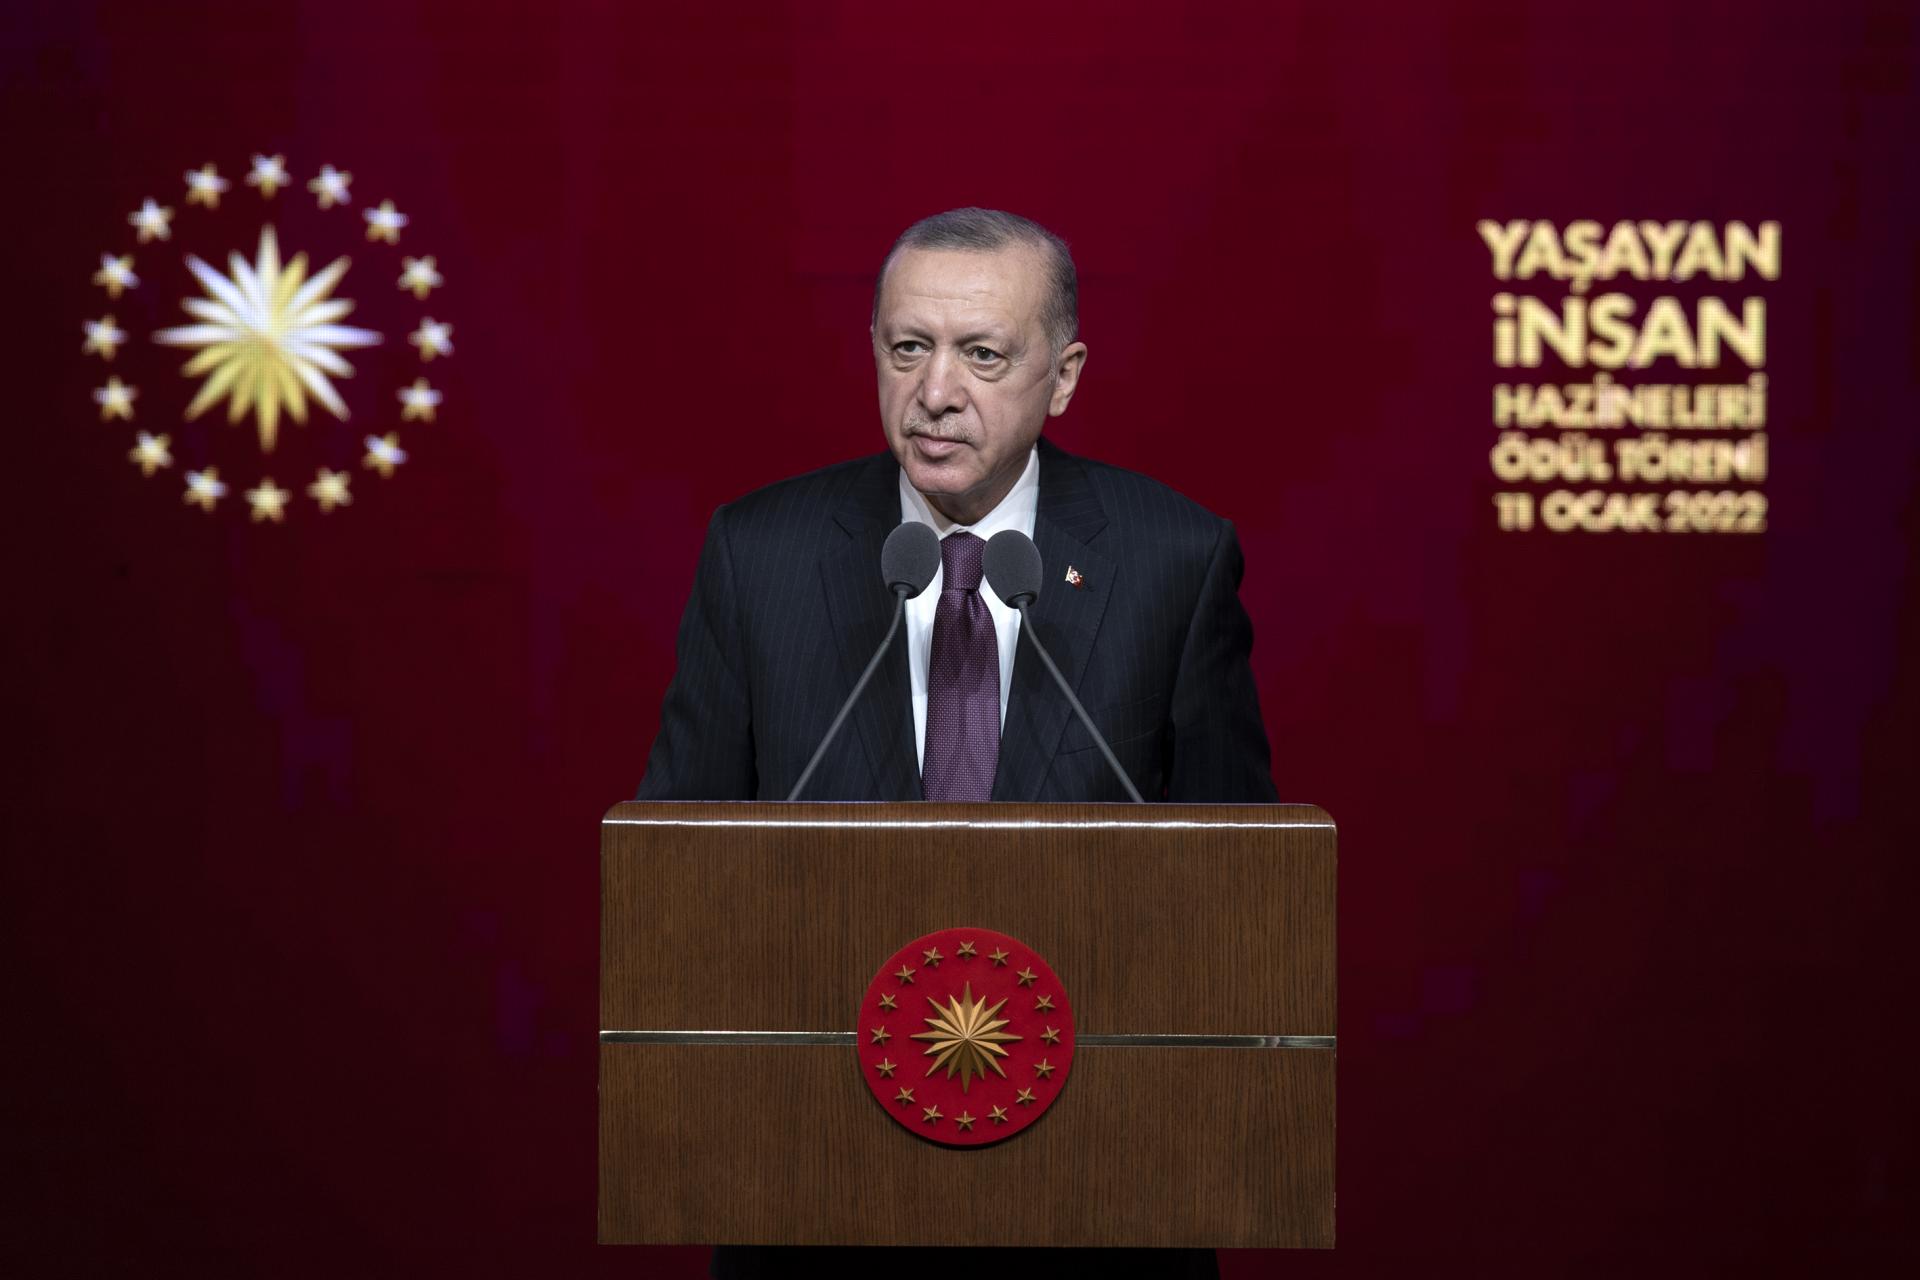 اردوغان: ترکیه قدرتمند با حمایت گنجینه انسانی بینظیرش ساخته خواهد شد